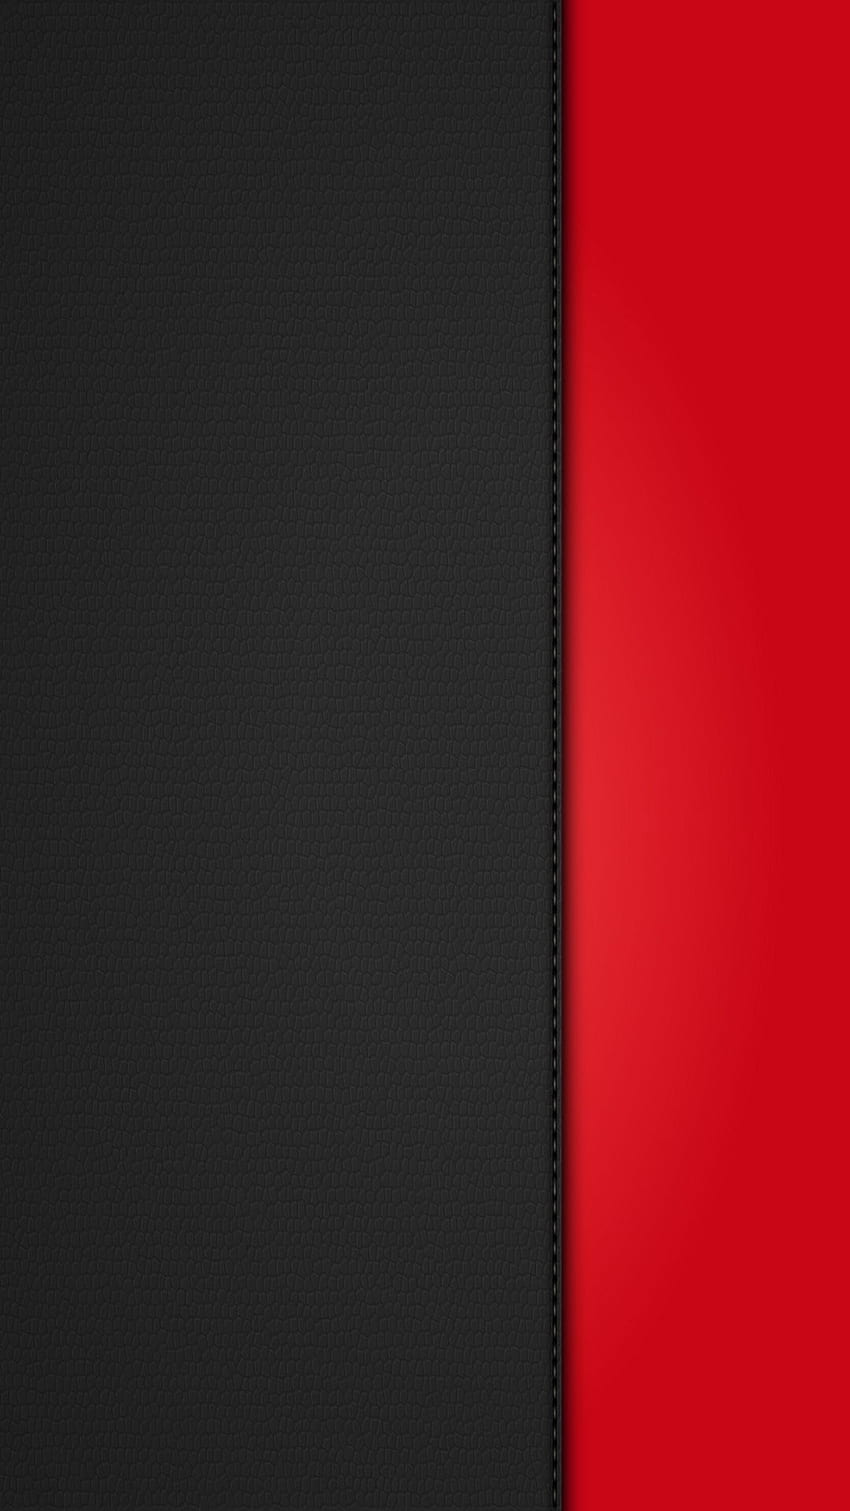 Orange Black Group Red iPhone 6 Plus - Setengah Hitam Dan Merah, Pasangan Setengah wallpaper ponsel HD